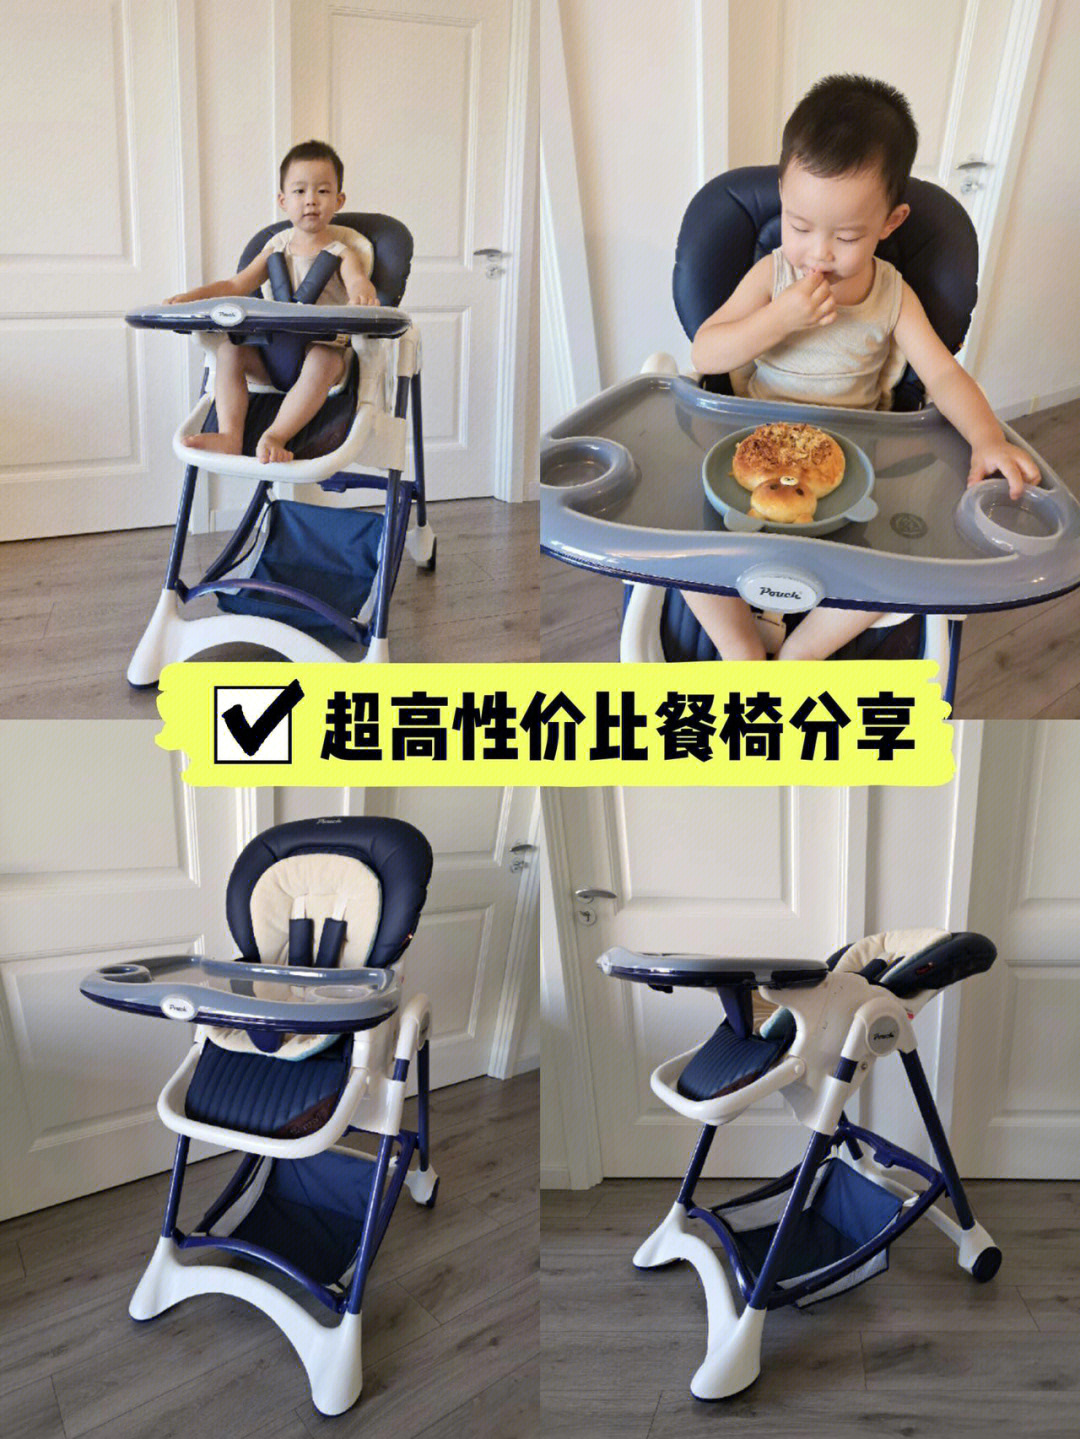 pouch儿童餐椅上下调节图片